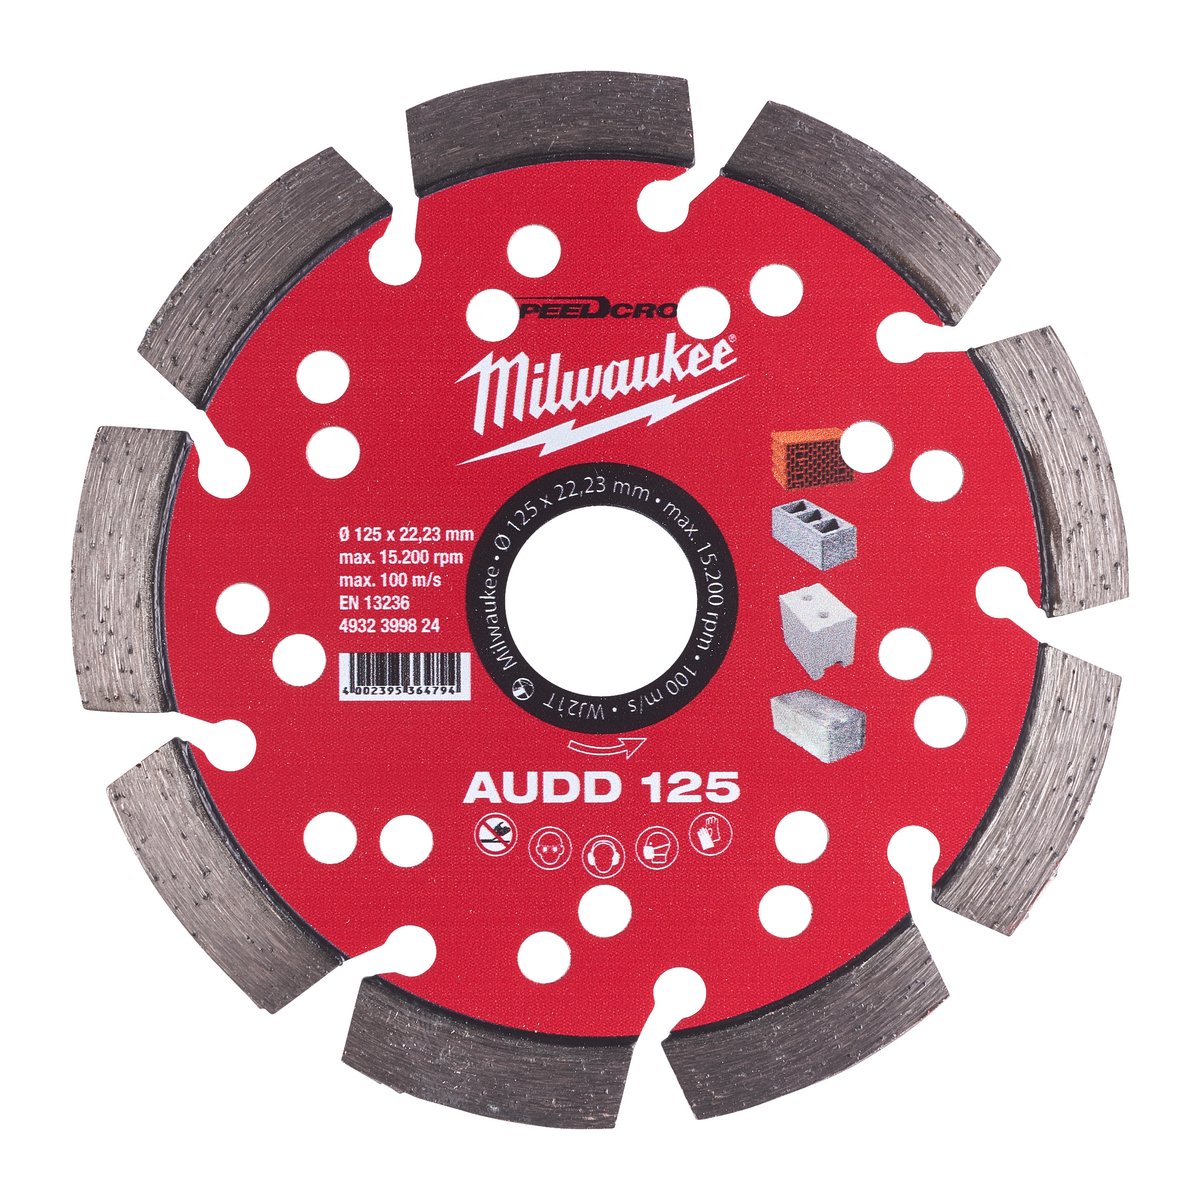 Алмазный диск AUDD 125 Milwaukee